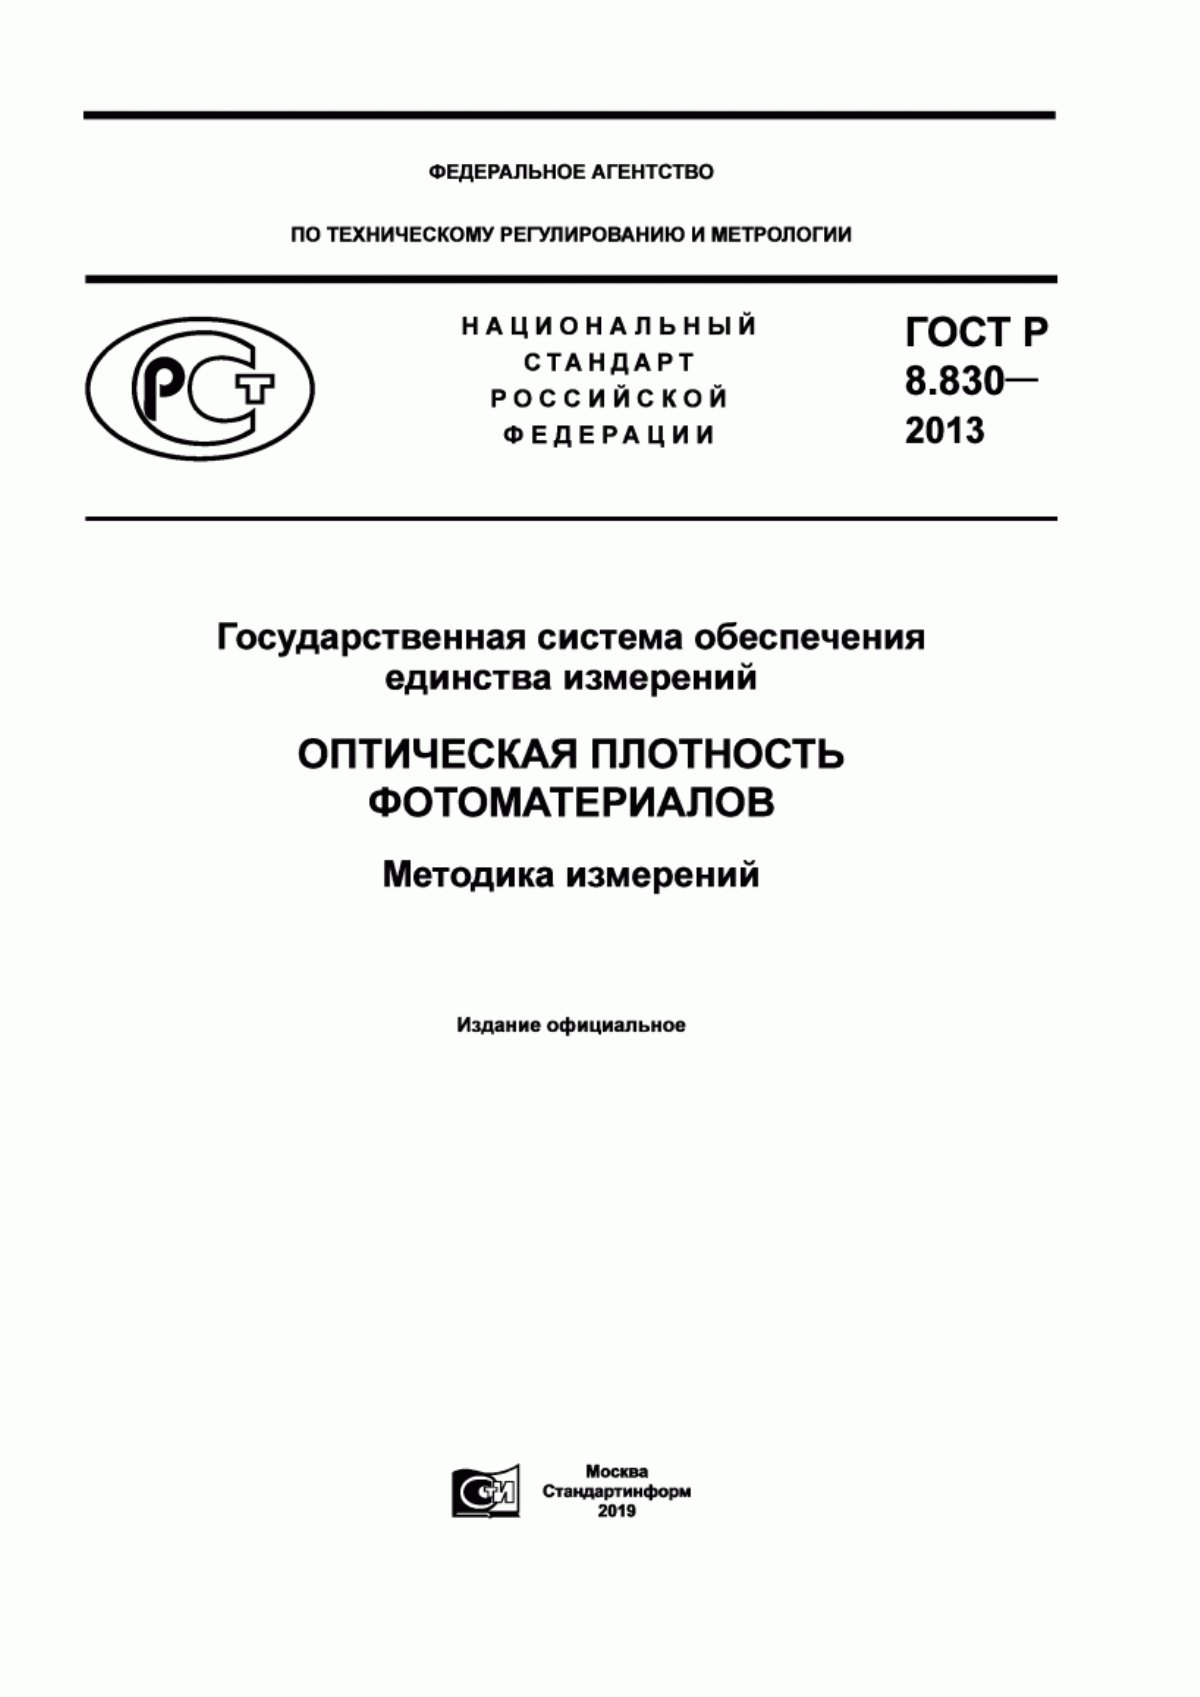 ГОСТ Р 8.830-2013 Государственная система обеспечения единства измерений. Оптическая плотность фотоматериалов. Методика измерений